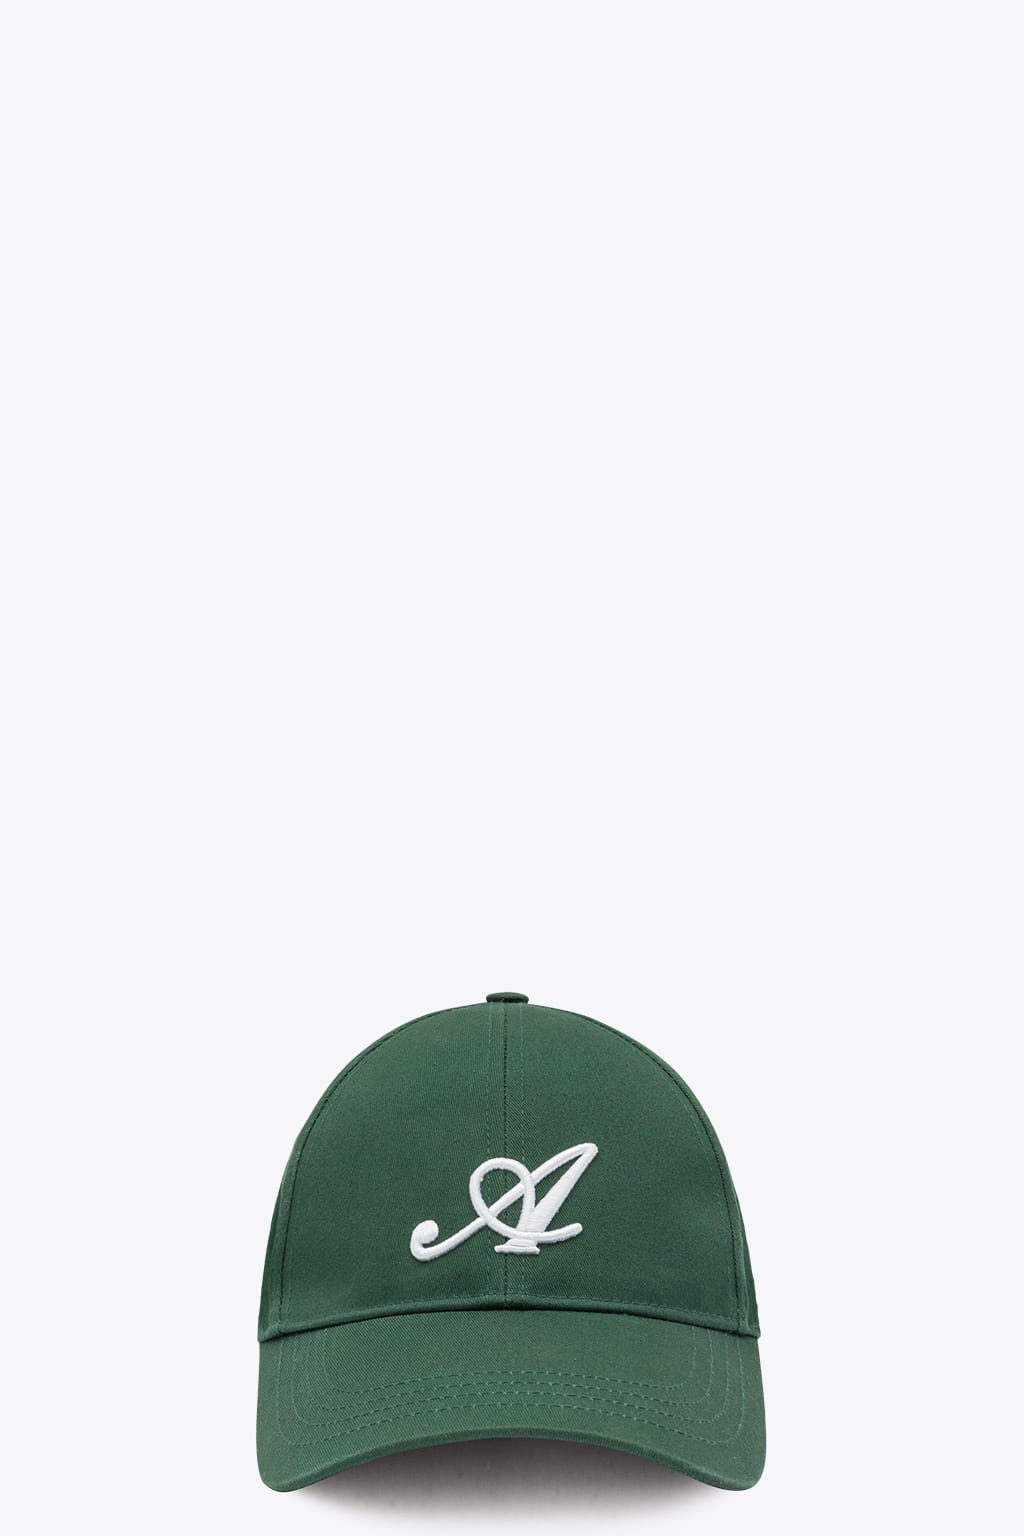 Axel Arigato Signature Cap Green baseball cap with monogram embroidery - Signature cap